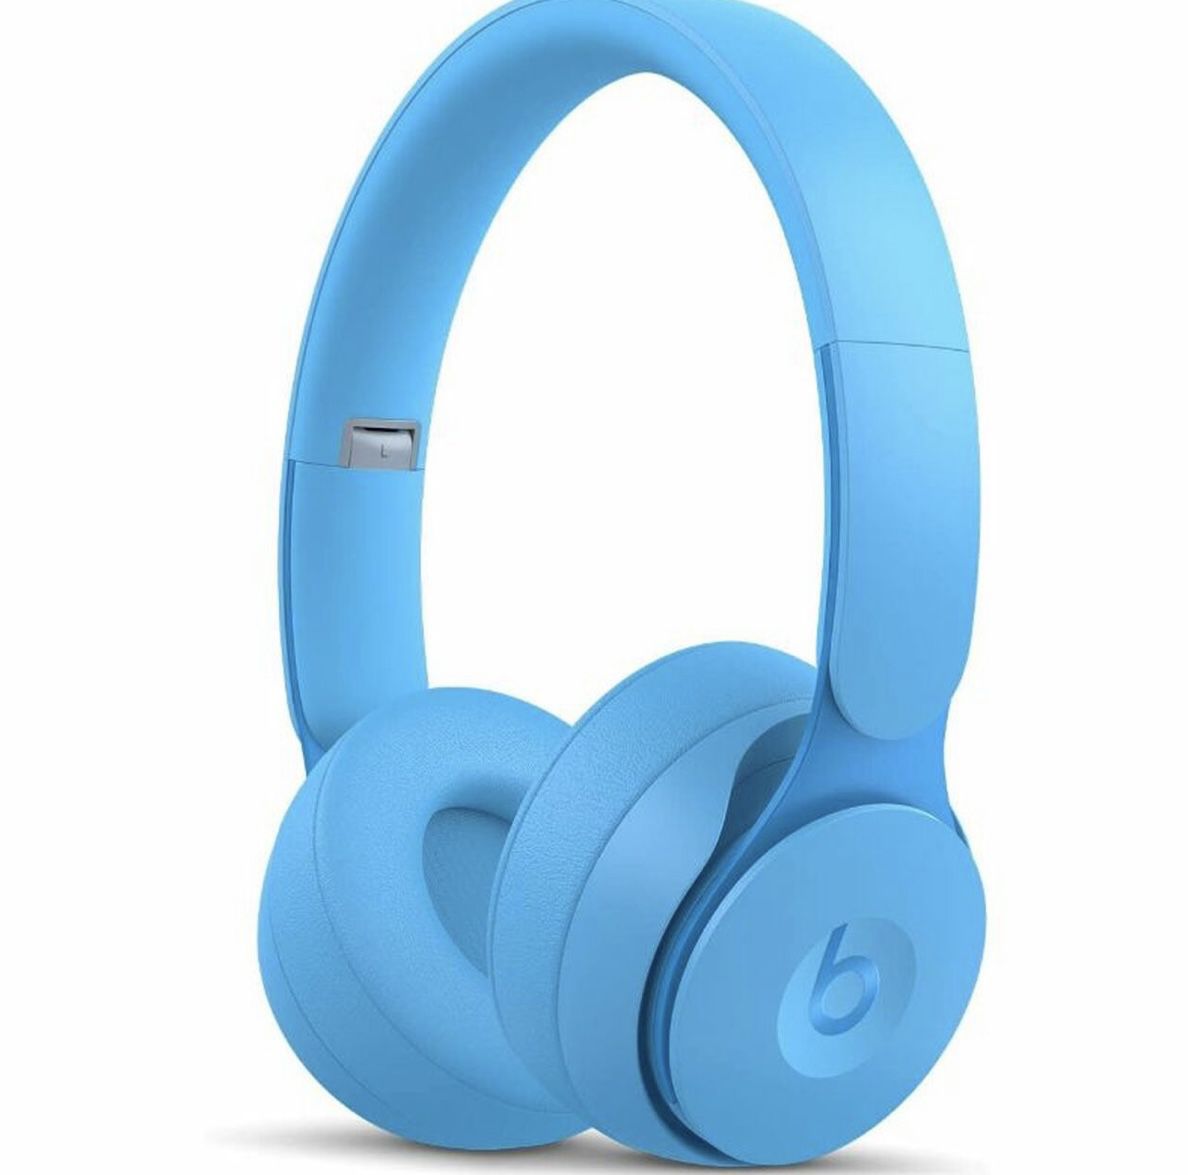 Beats Solo Pro Wireless Noise Cancelling On-Ear Headphones - Blue